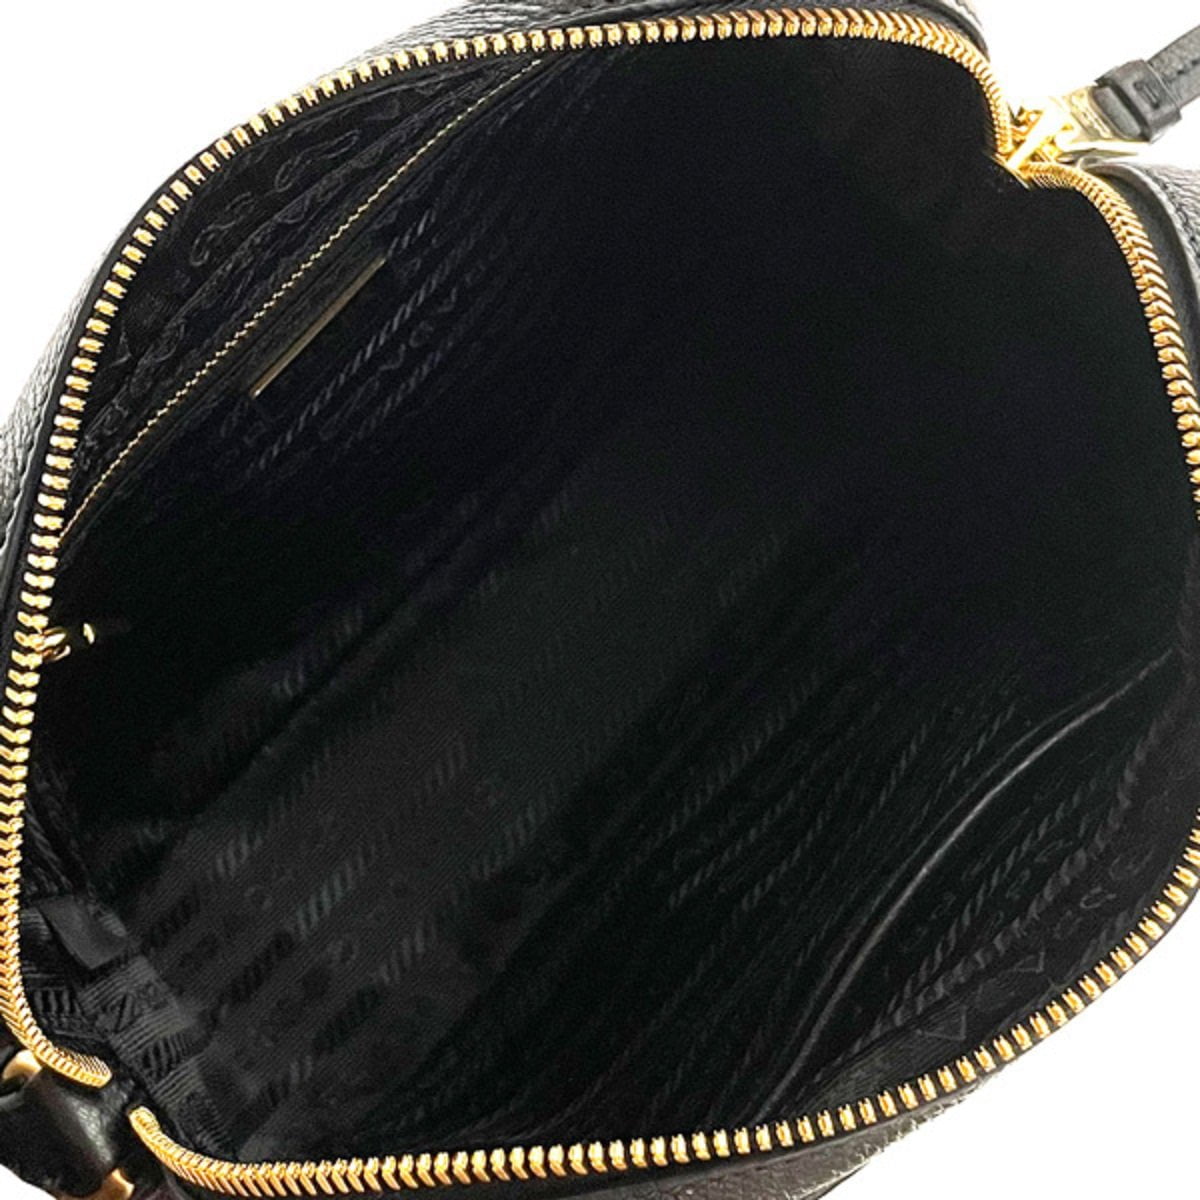 Prada Vitello Phenix Peonia Leather Flap Crossbody Bag – Queen Bee